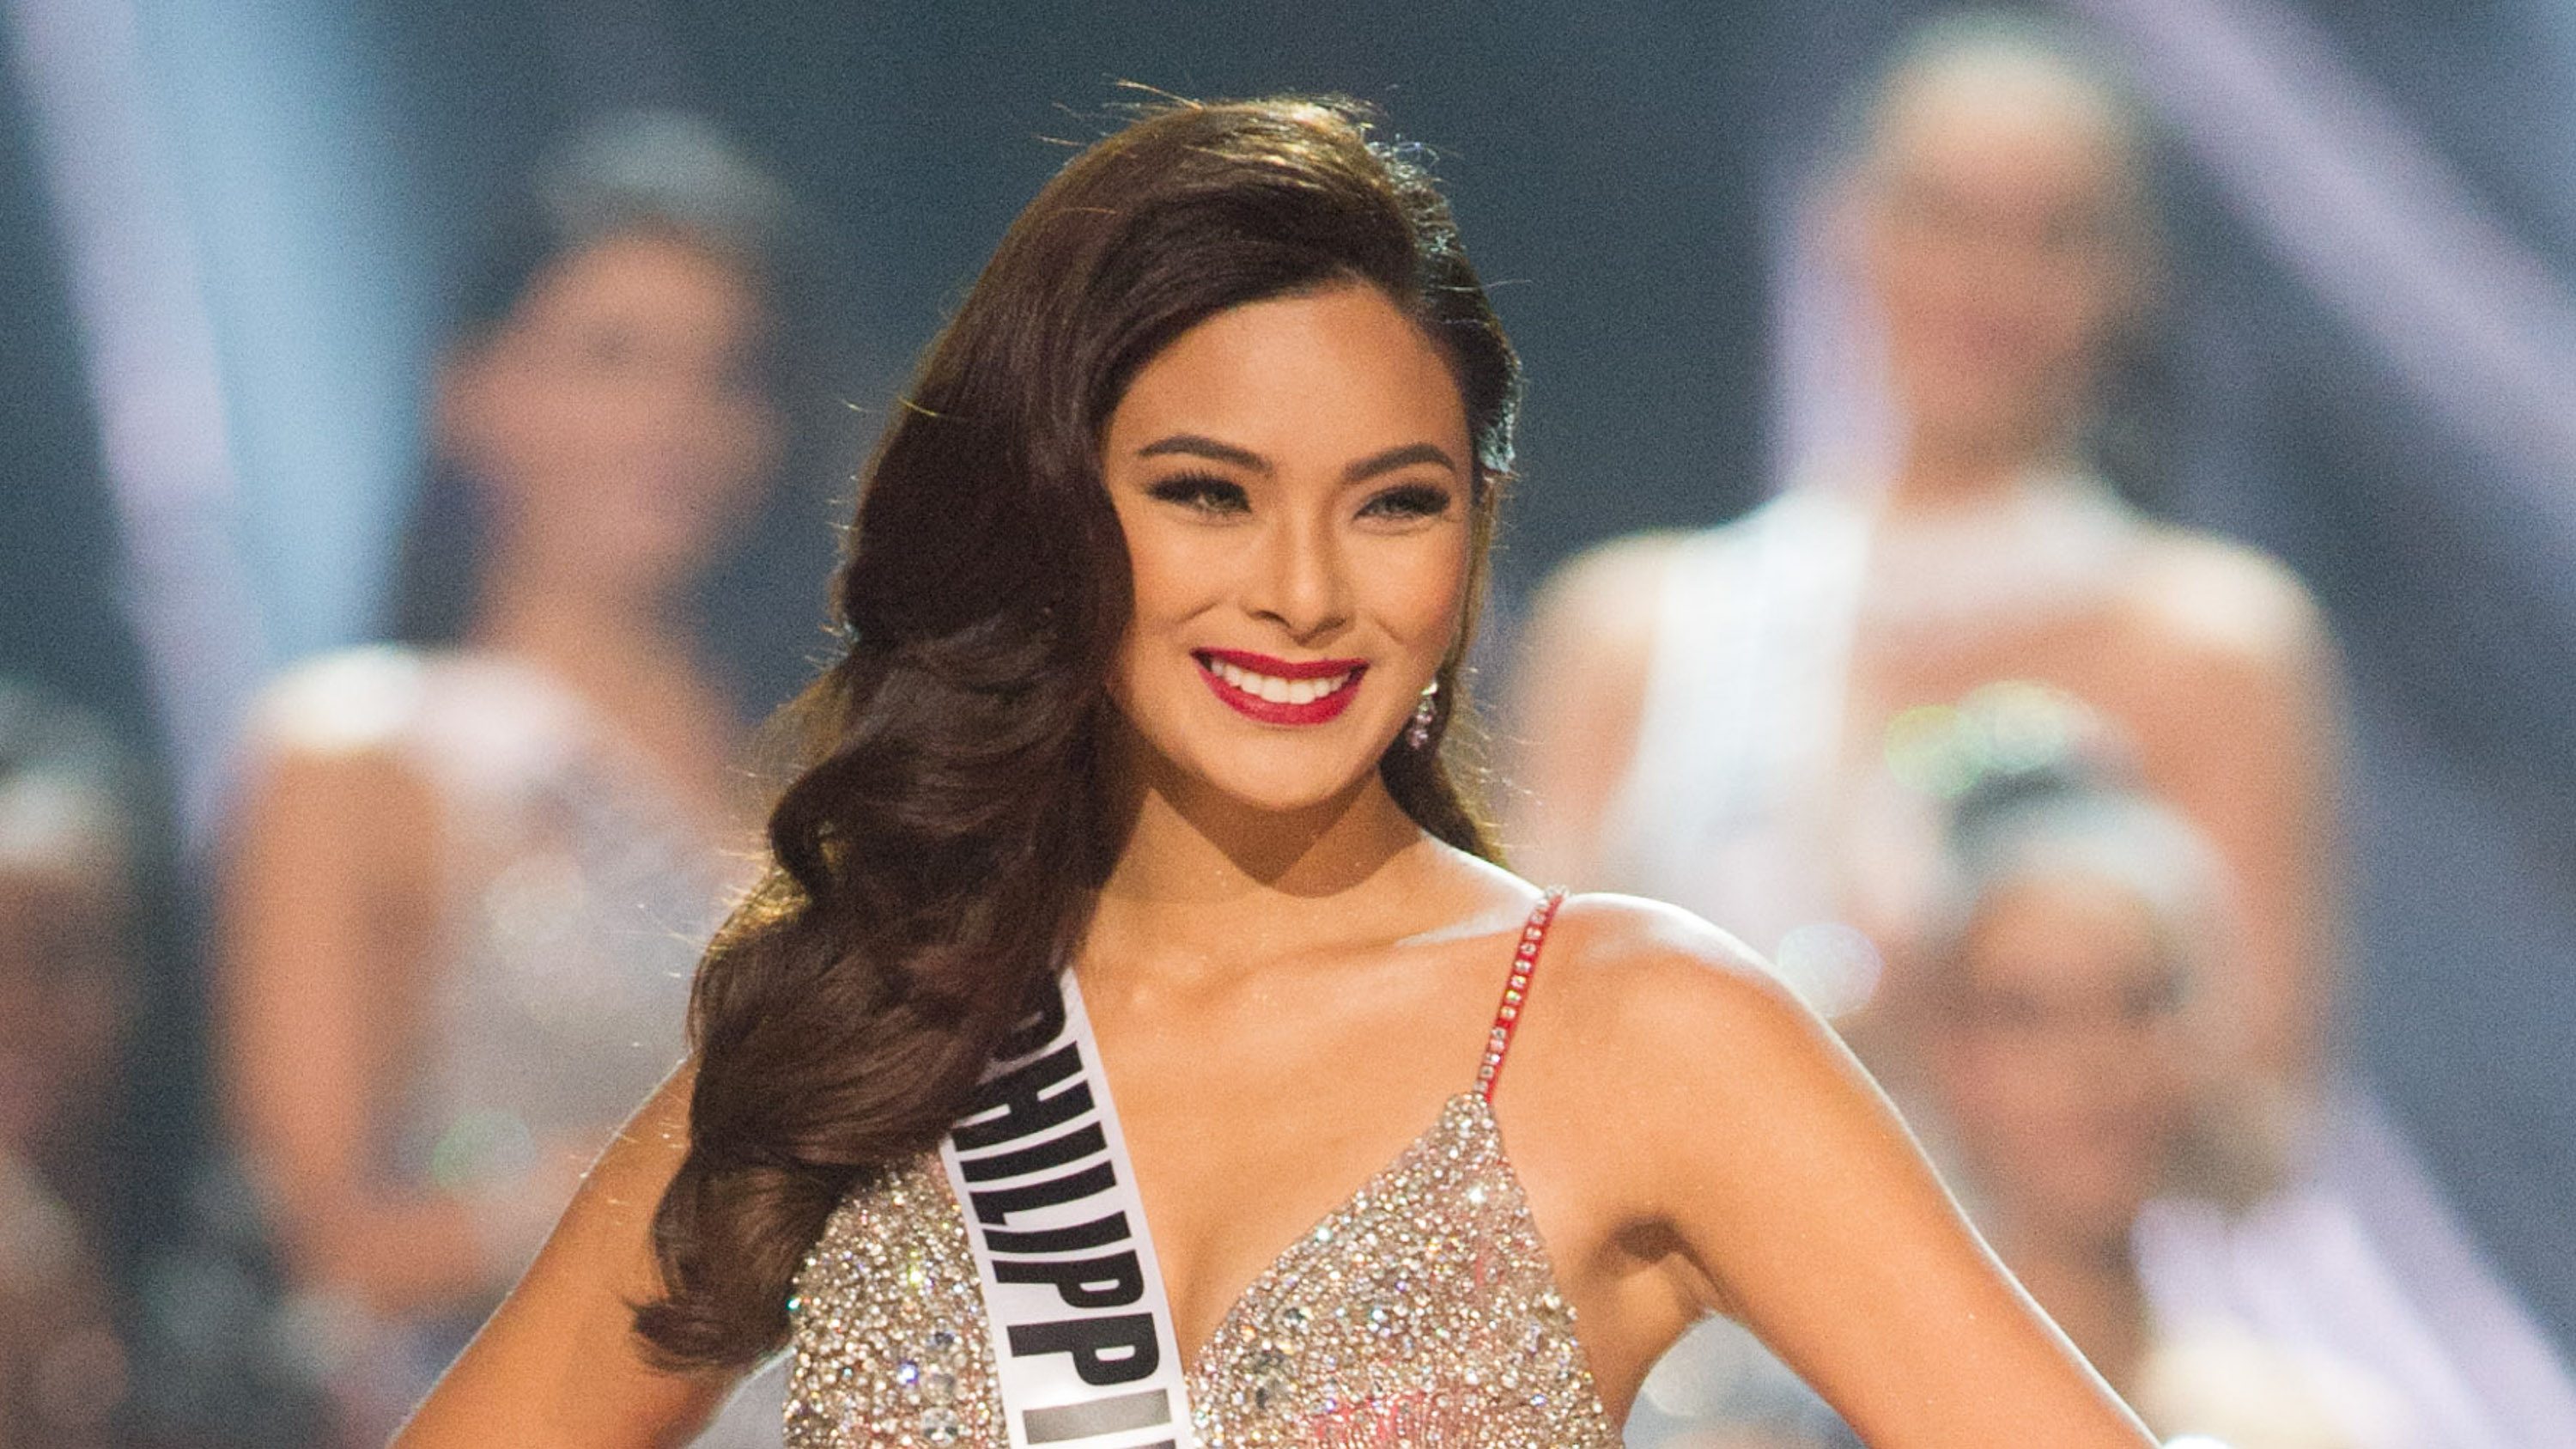 Usai Miss Universe, pujian dan catatan untuk taruhan PH Maxine Medina